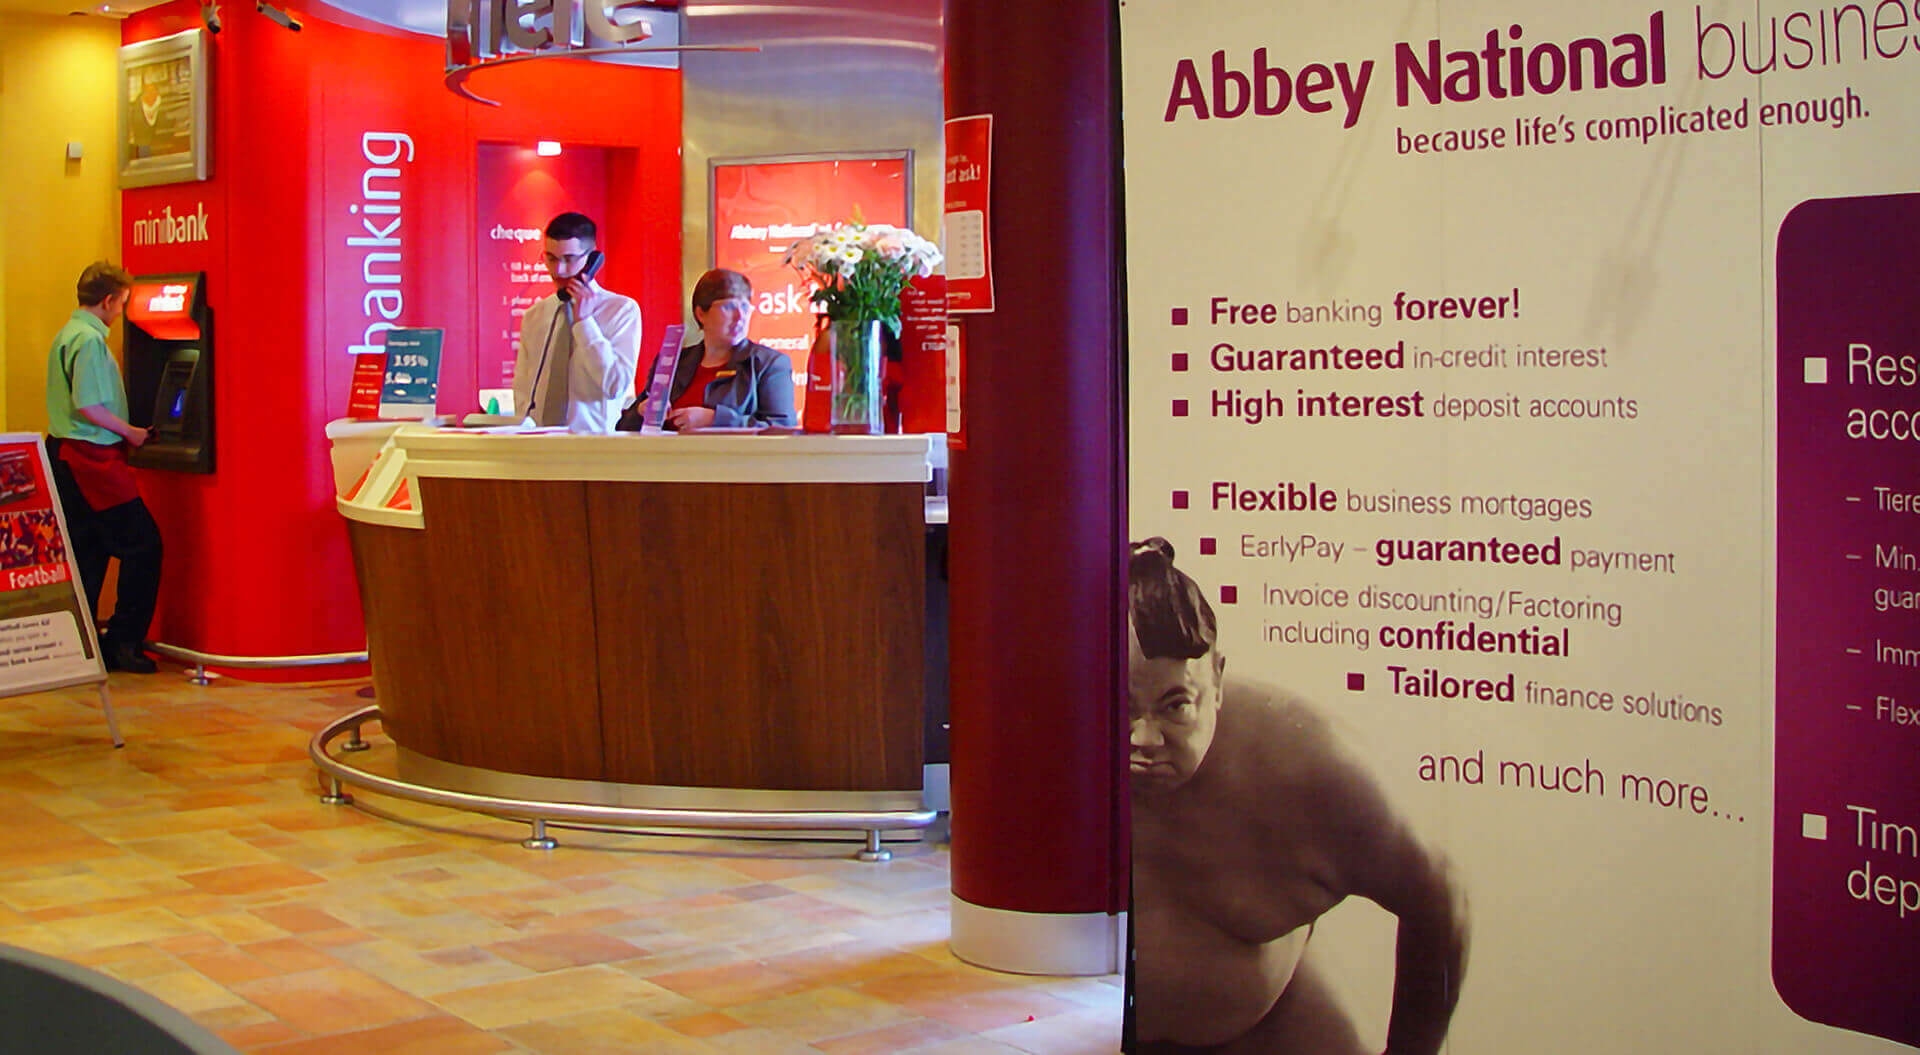 Abbey supermarket mini bank branch rebrand and interior design. Reception and mini-bank ATM self-service 